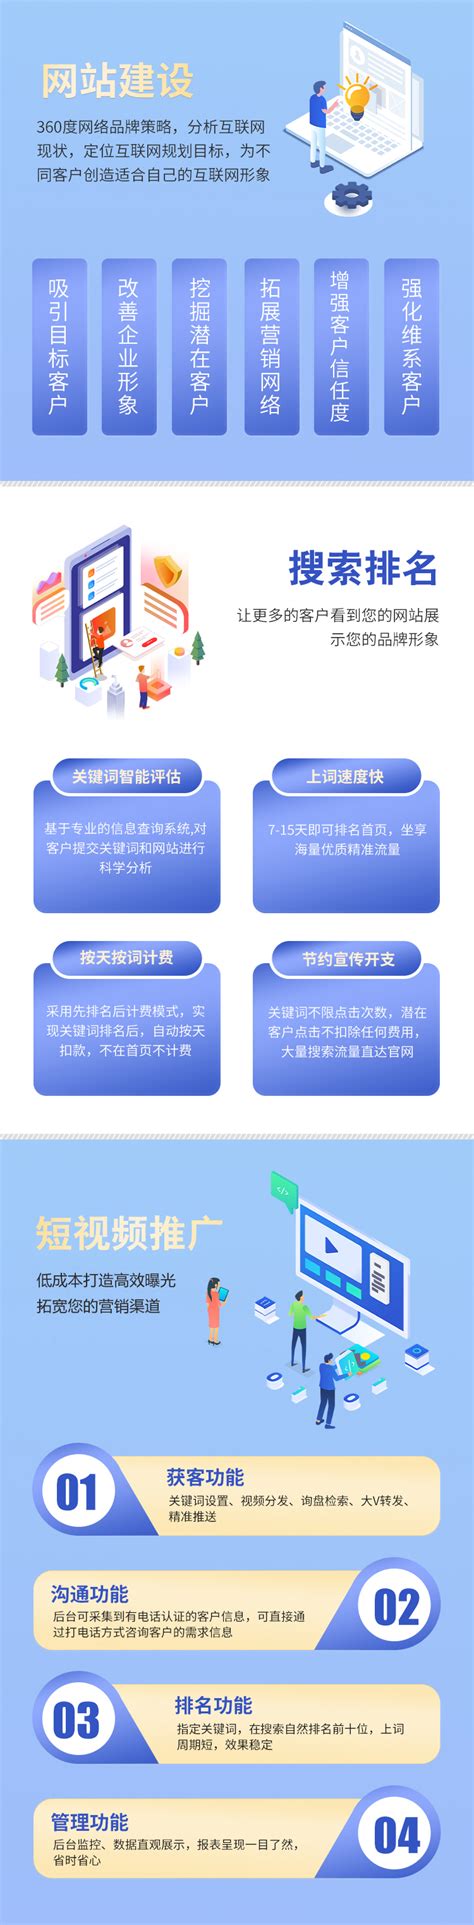 最新浙江网站建设方案